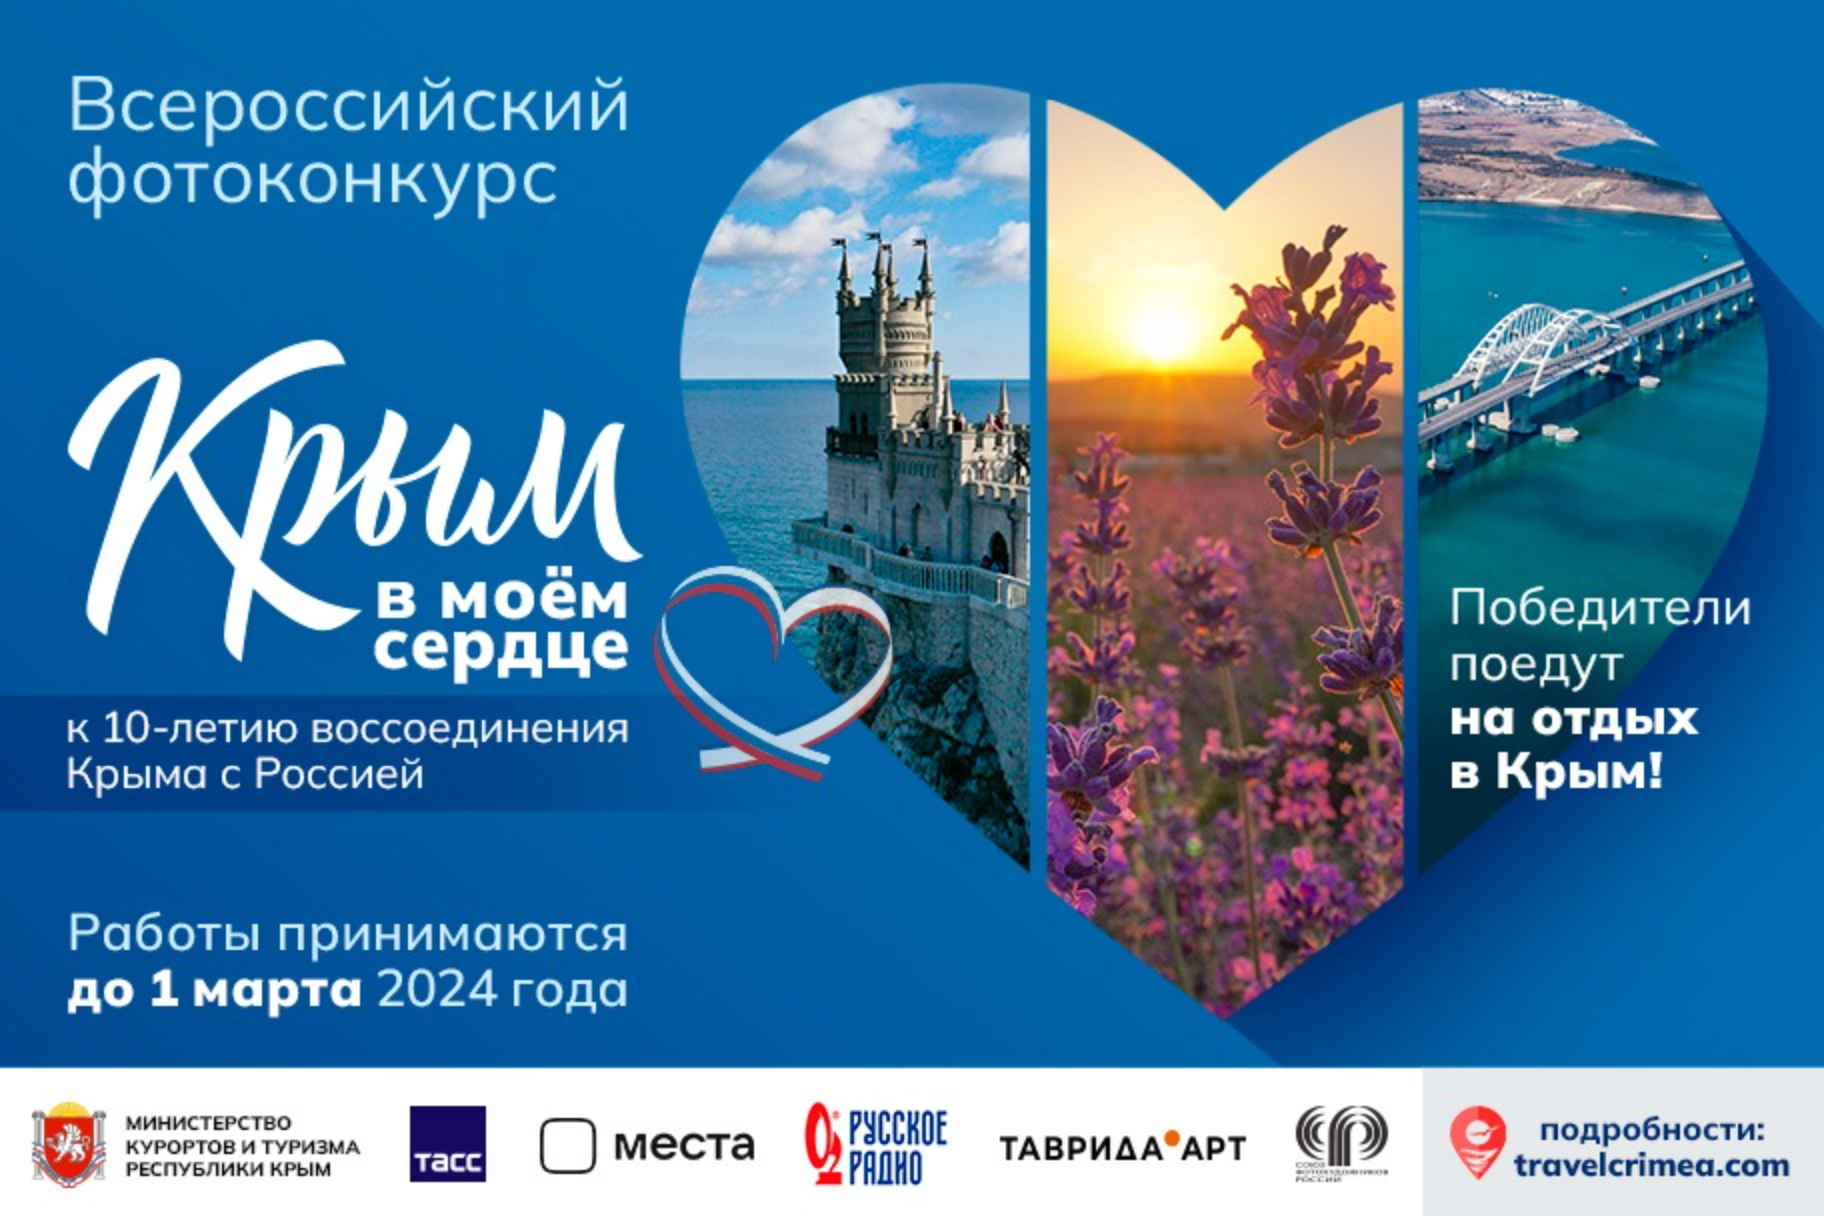 Крым дарит путевки на отдых за лучшие фото полуострова в преддверии 10-летия Крымской весны